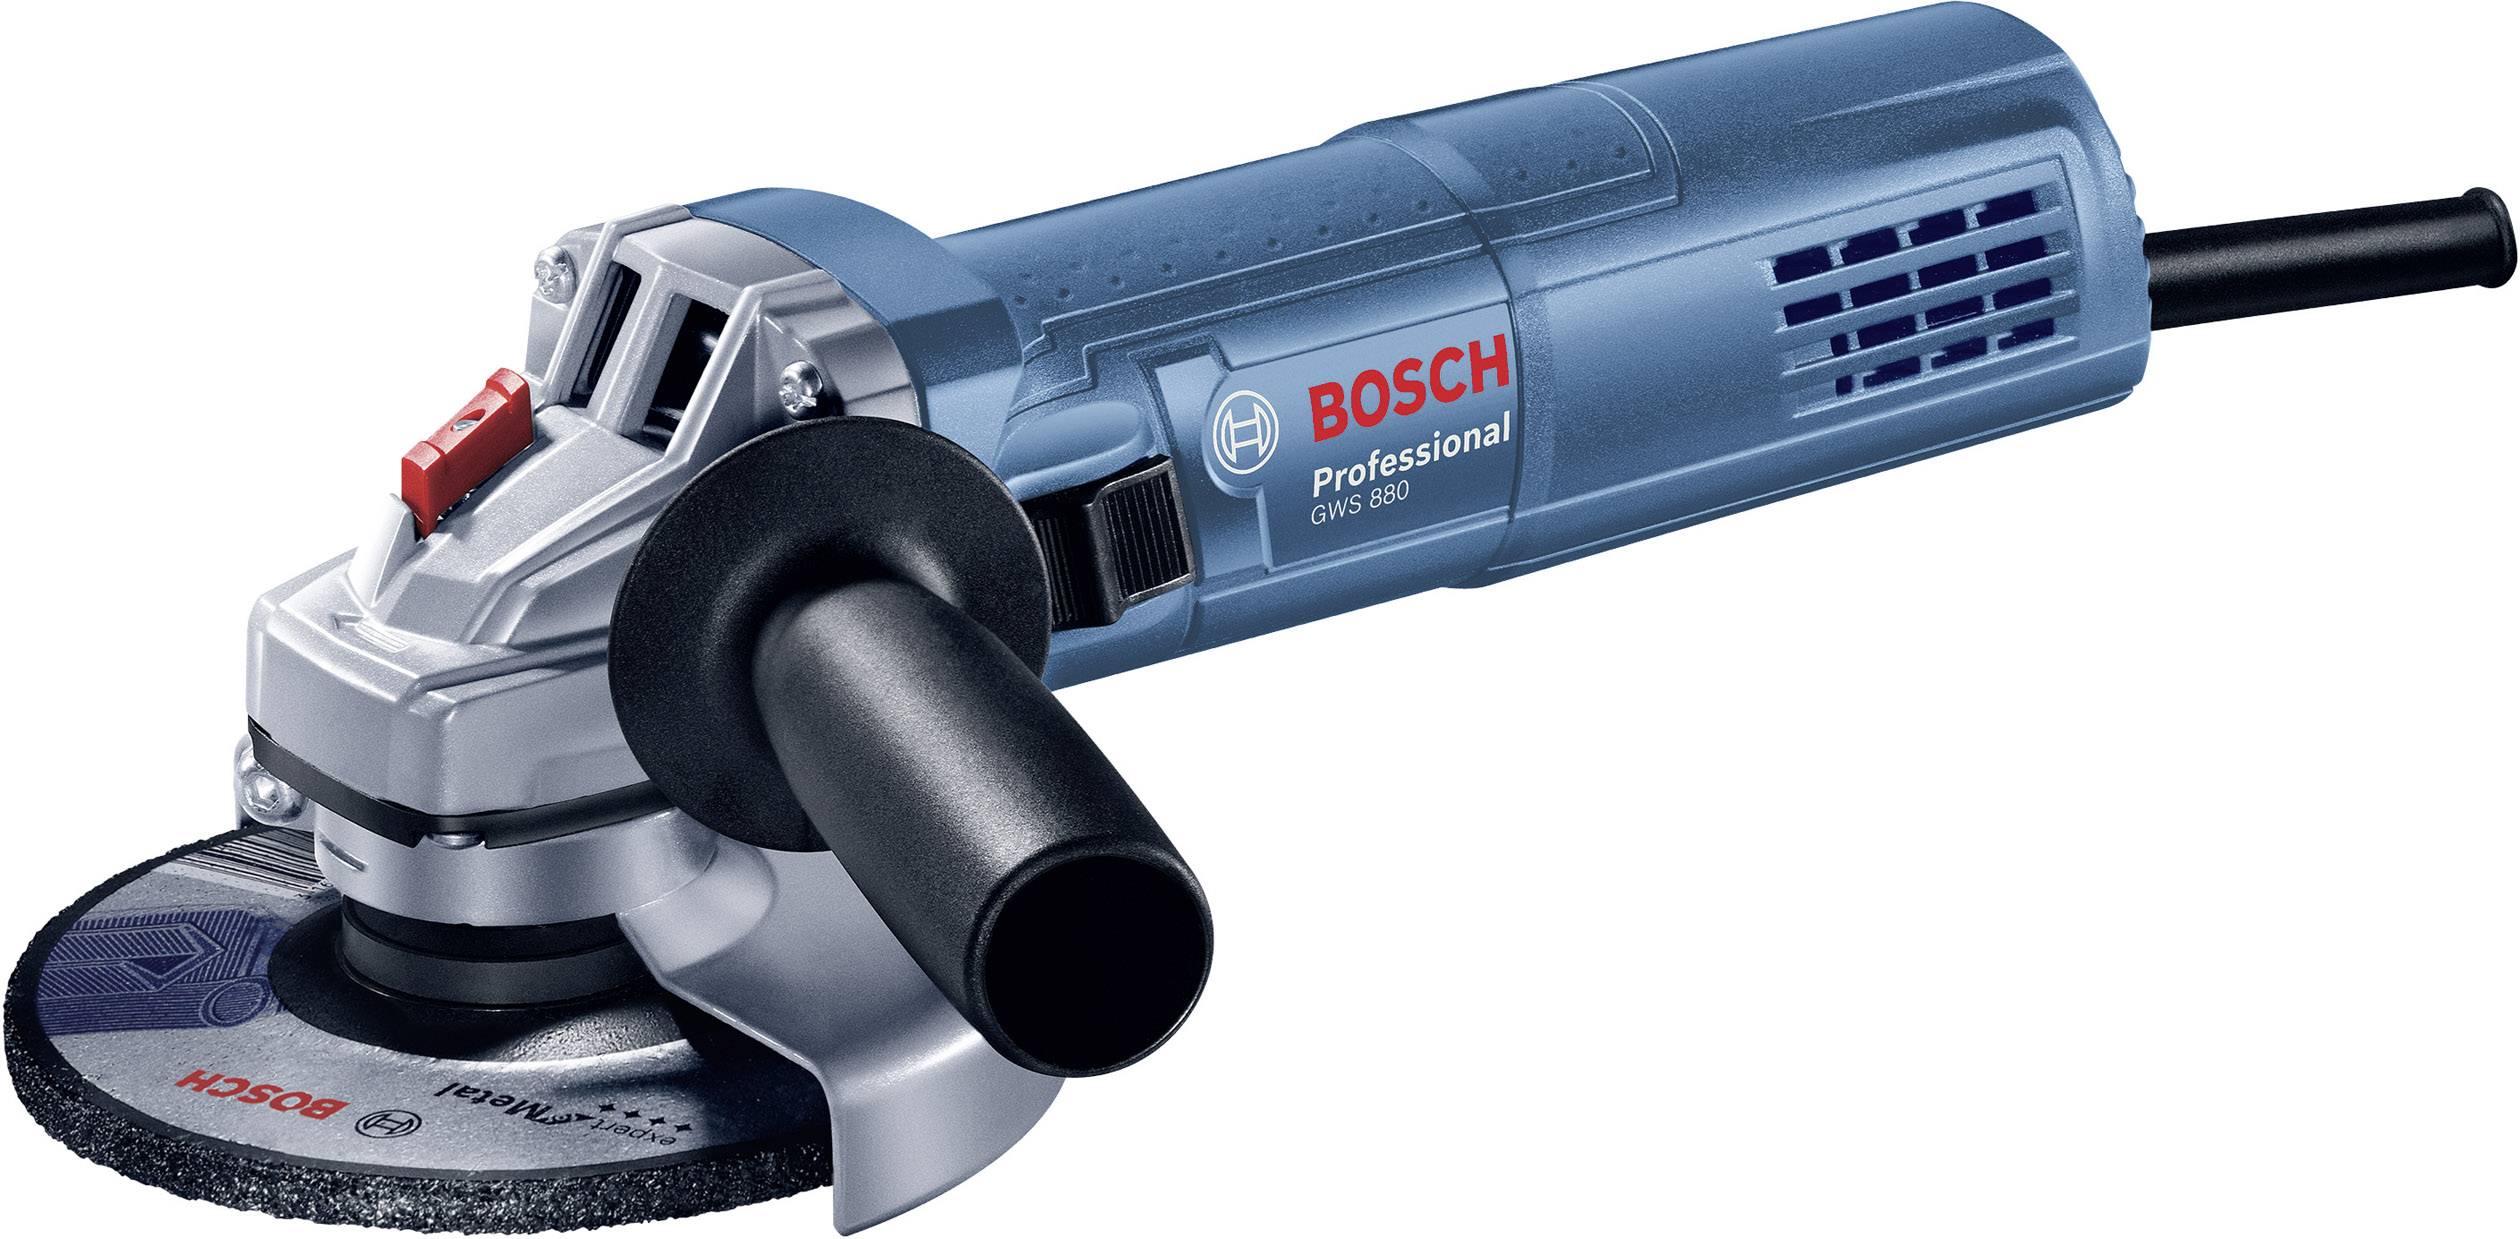 GWS 880 Professional Angle Grinder 125mm/880W Bosch